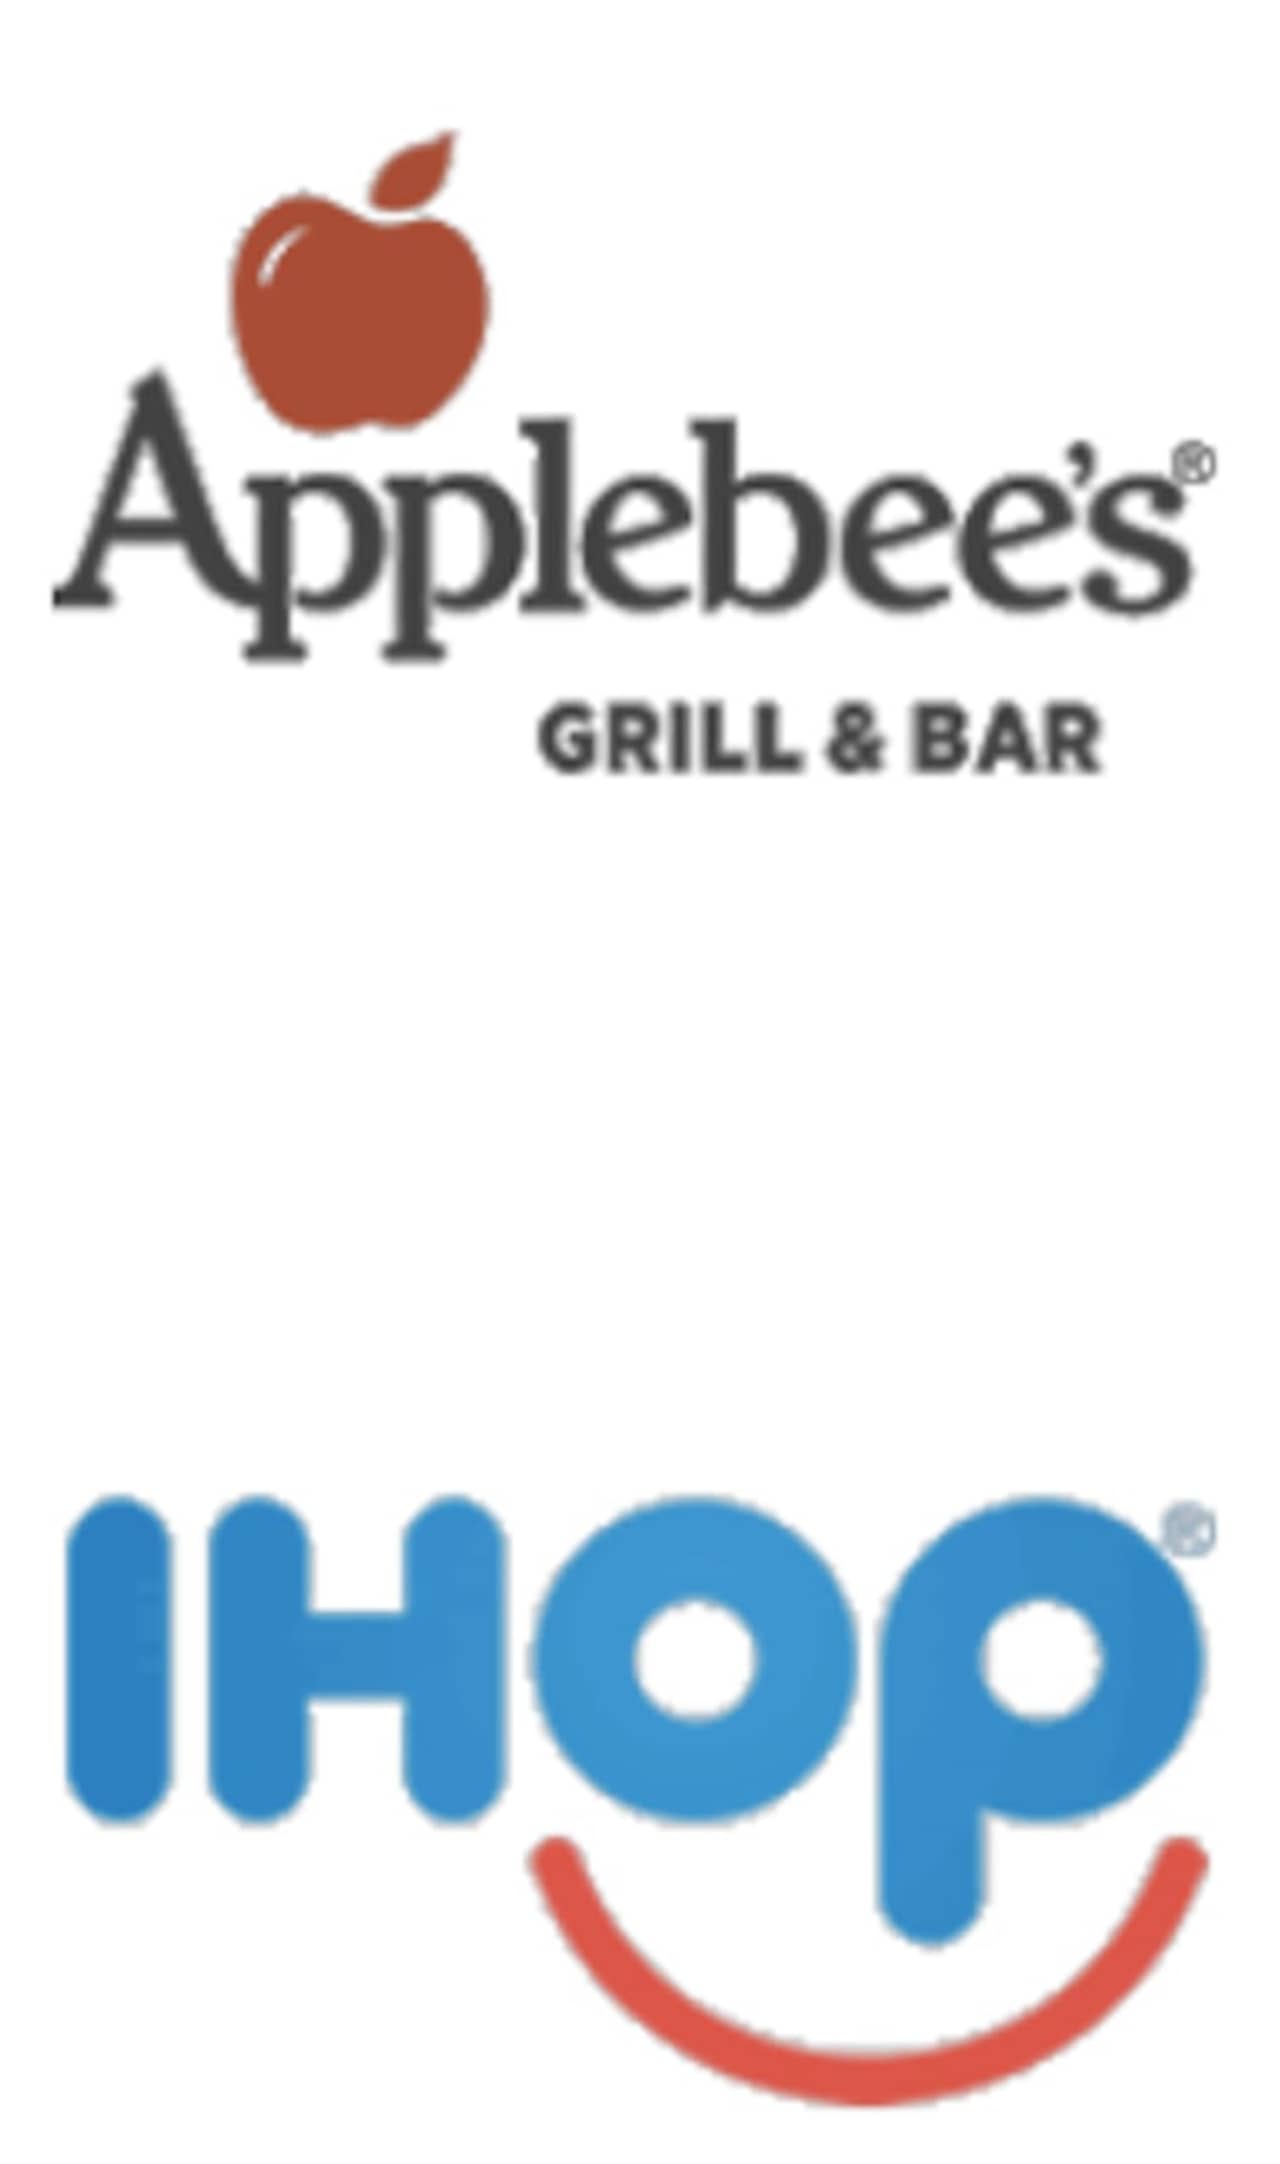 DineEquity operates Applebee's and IHOP restaurants.